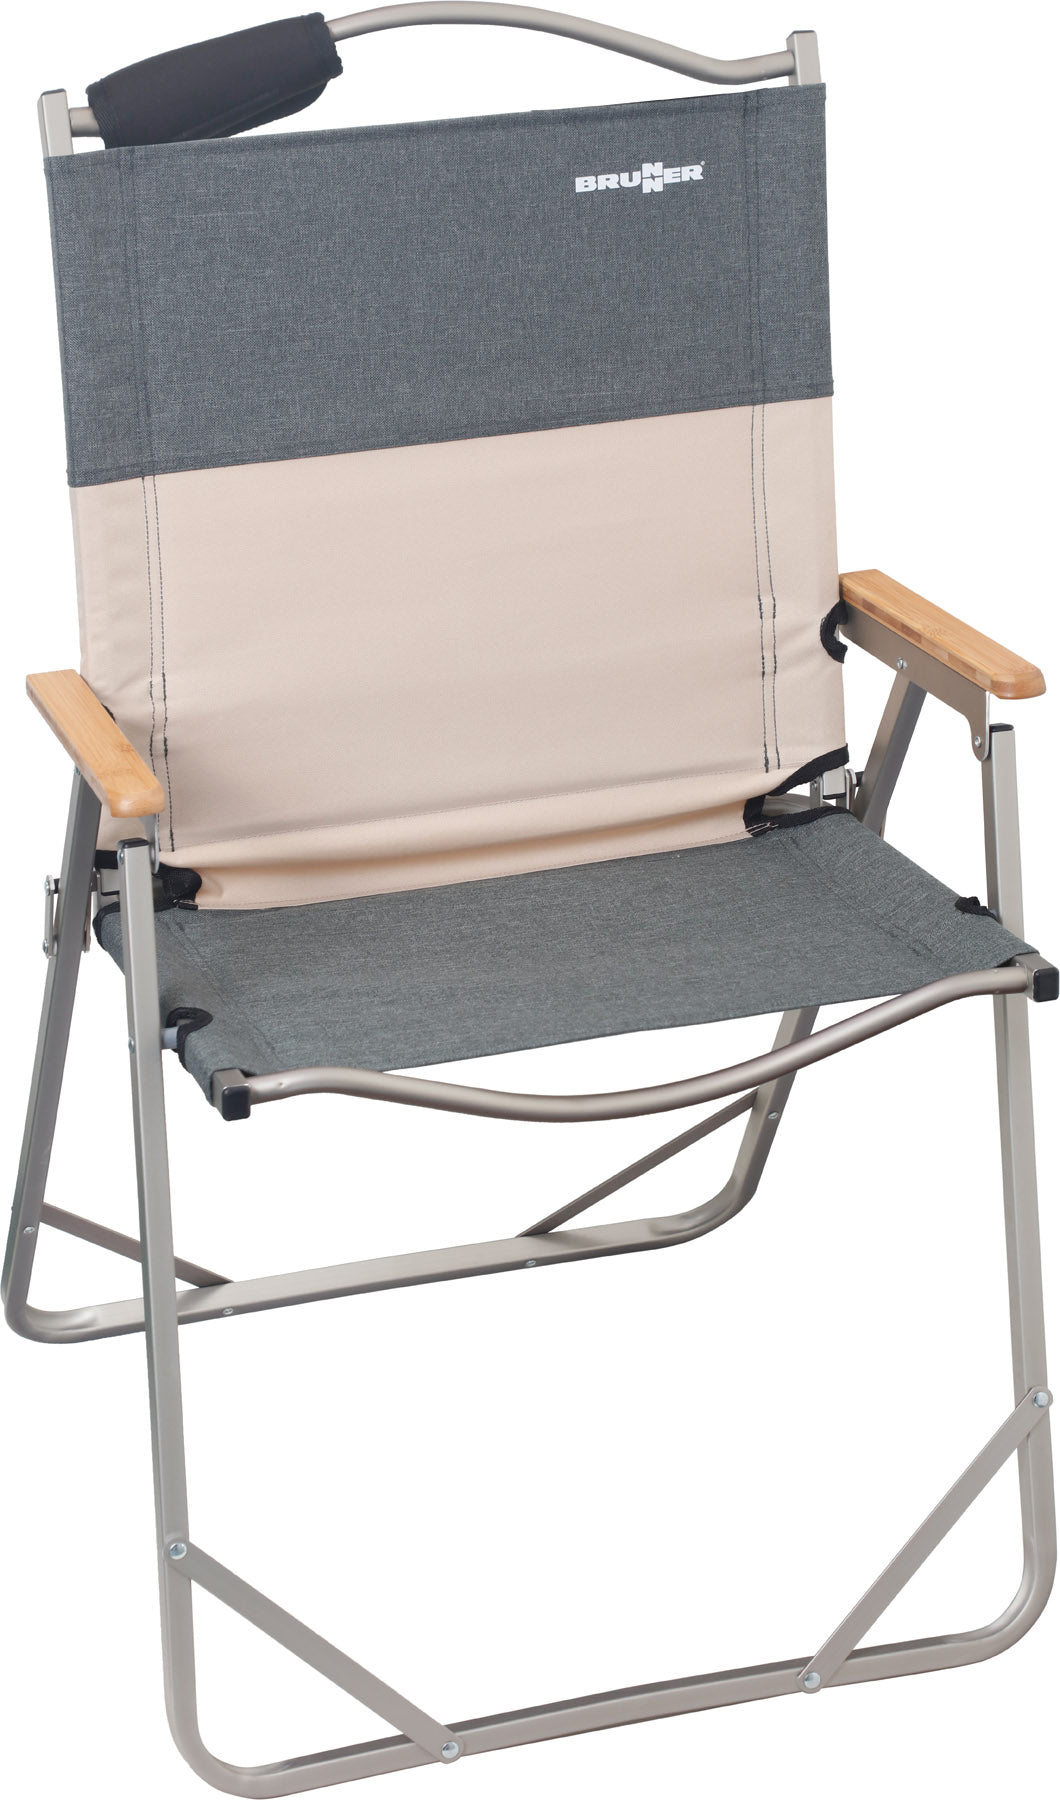 Свръх лек сгъваем стол за къмпинг. Подходящ за ван или кемпер с леки и компактни размери. Модерен дизайн с подлакътници от стествено дърво. Light folding chair for camping, modern design and sturdy materials. Natural wood armrests.